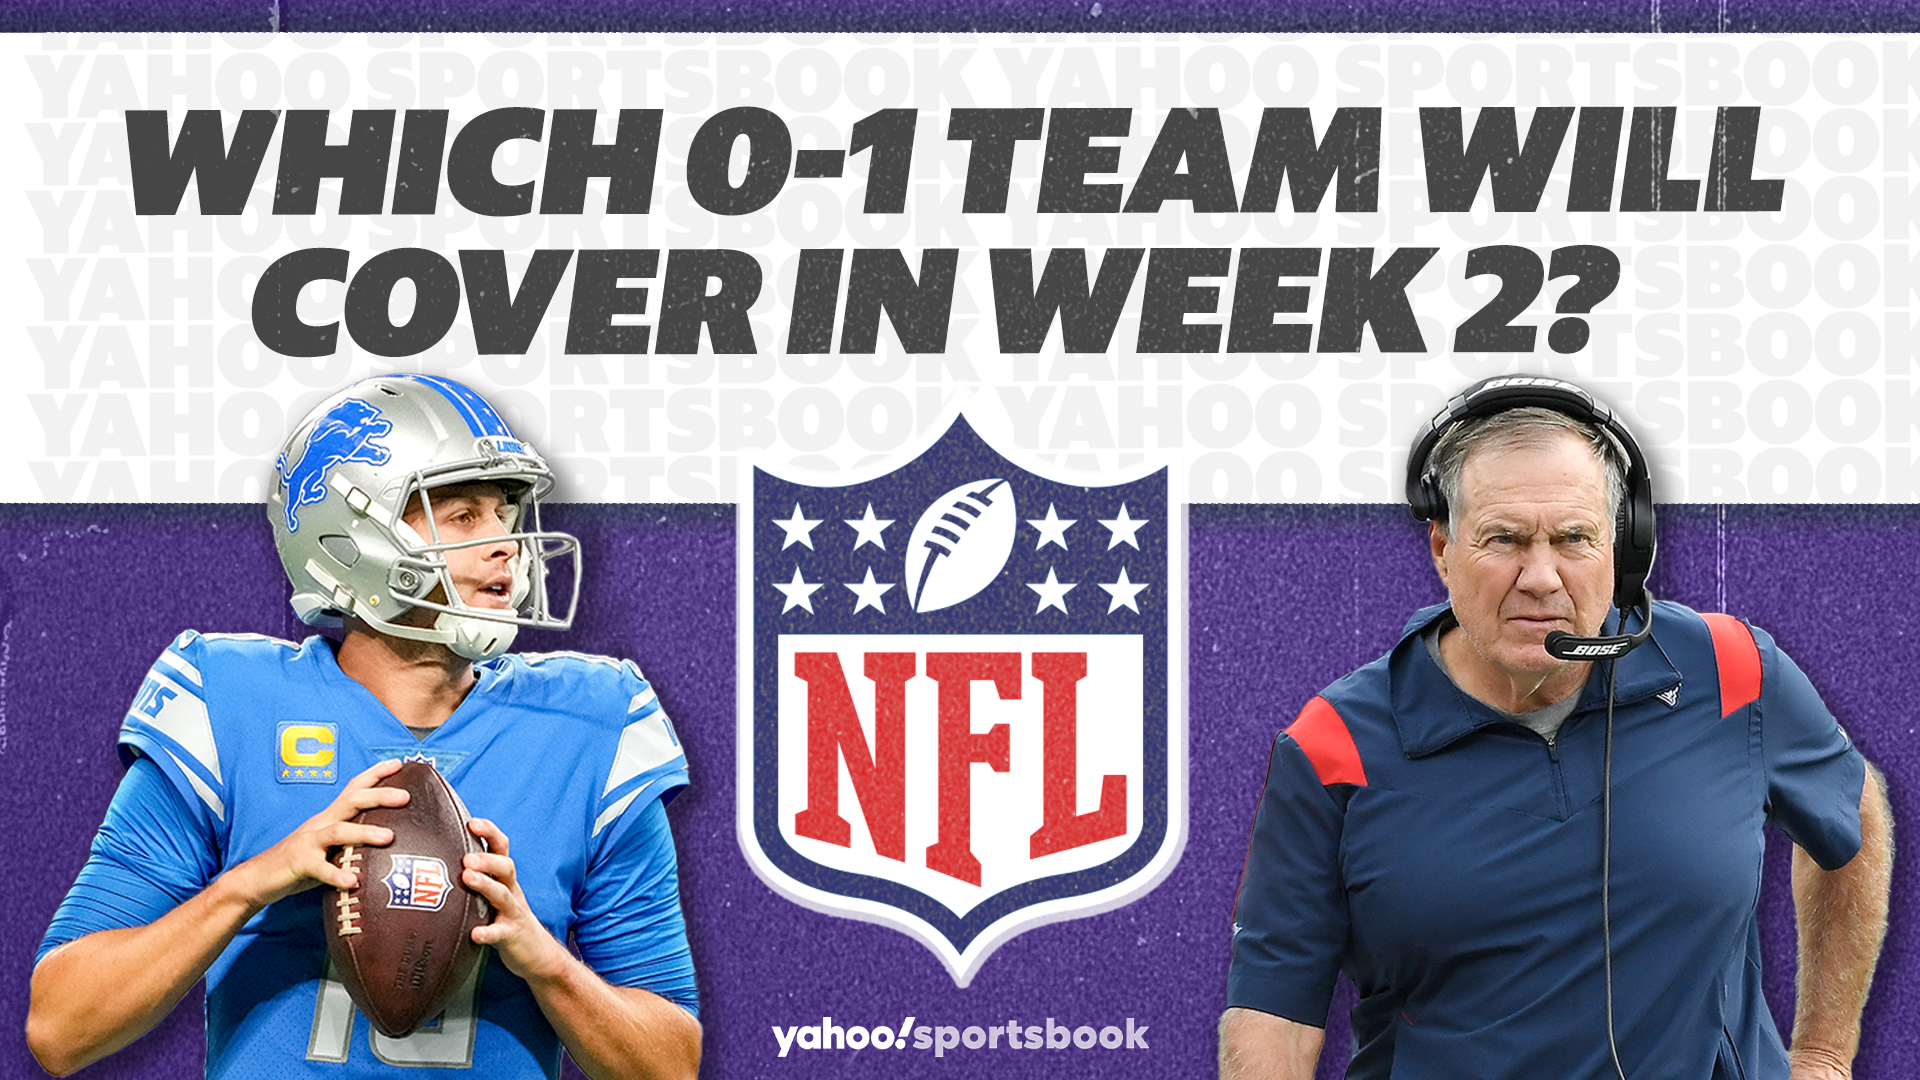 NFL Week 1 eliminator picks: Best bets for NFL survivor pool